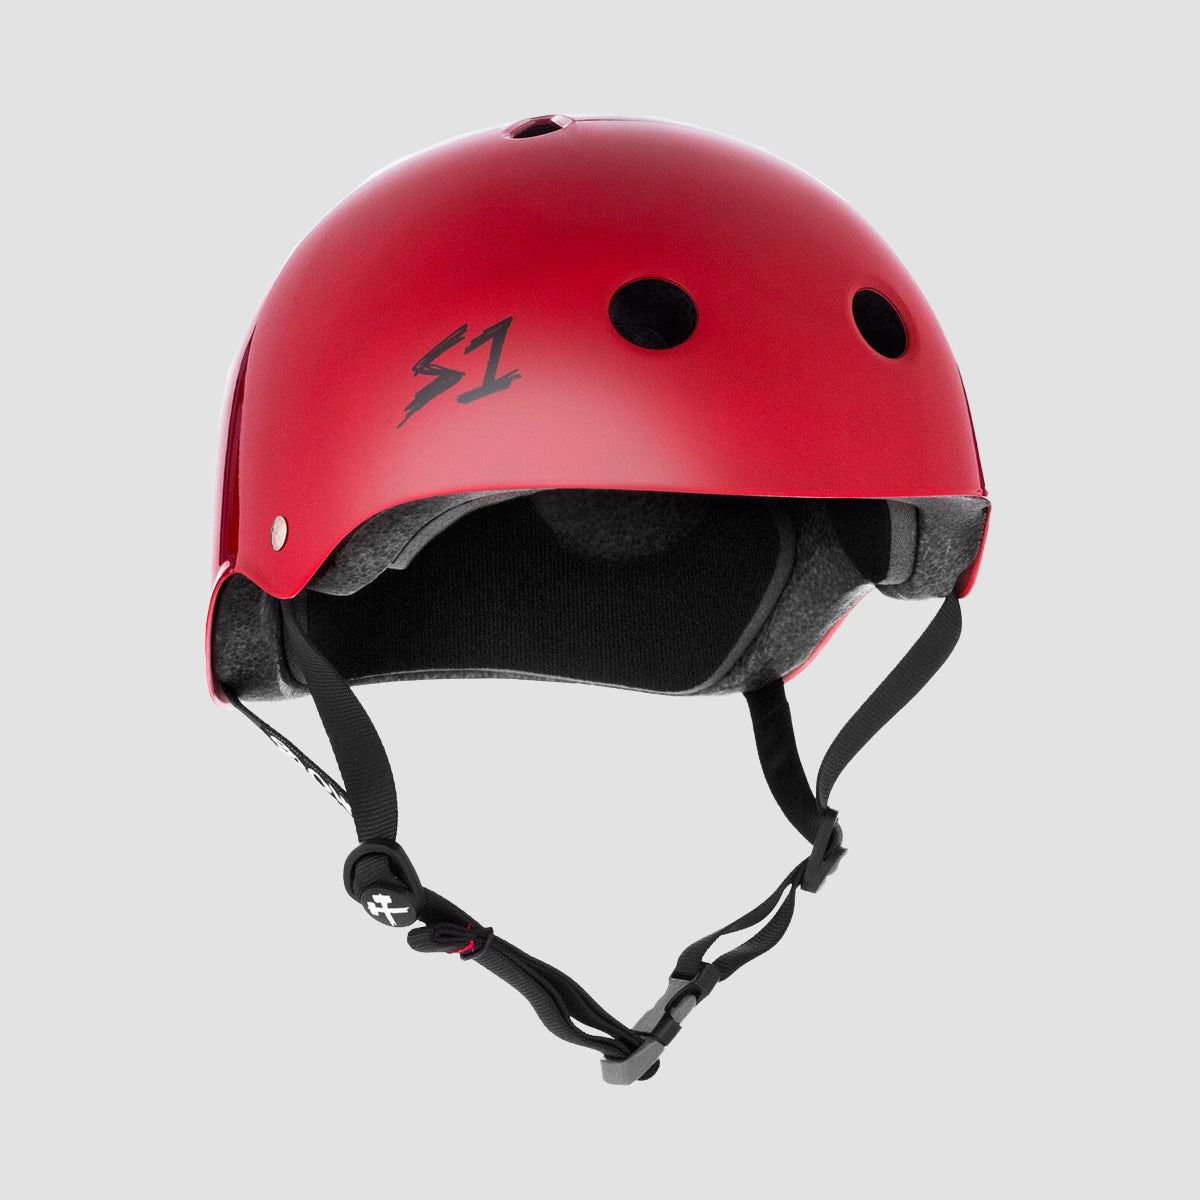 S1 Lifer Helmet Blood Red Gloss